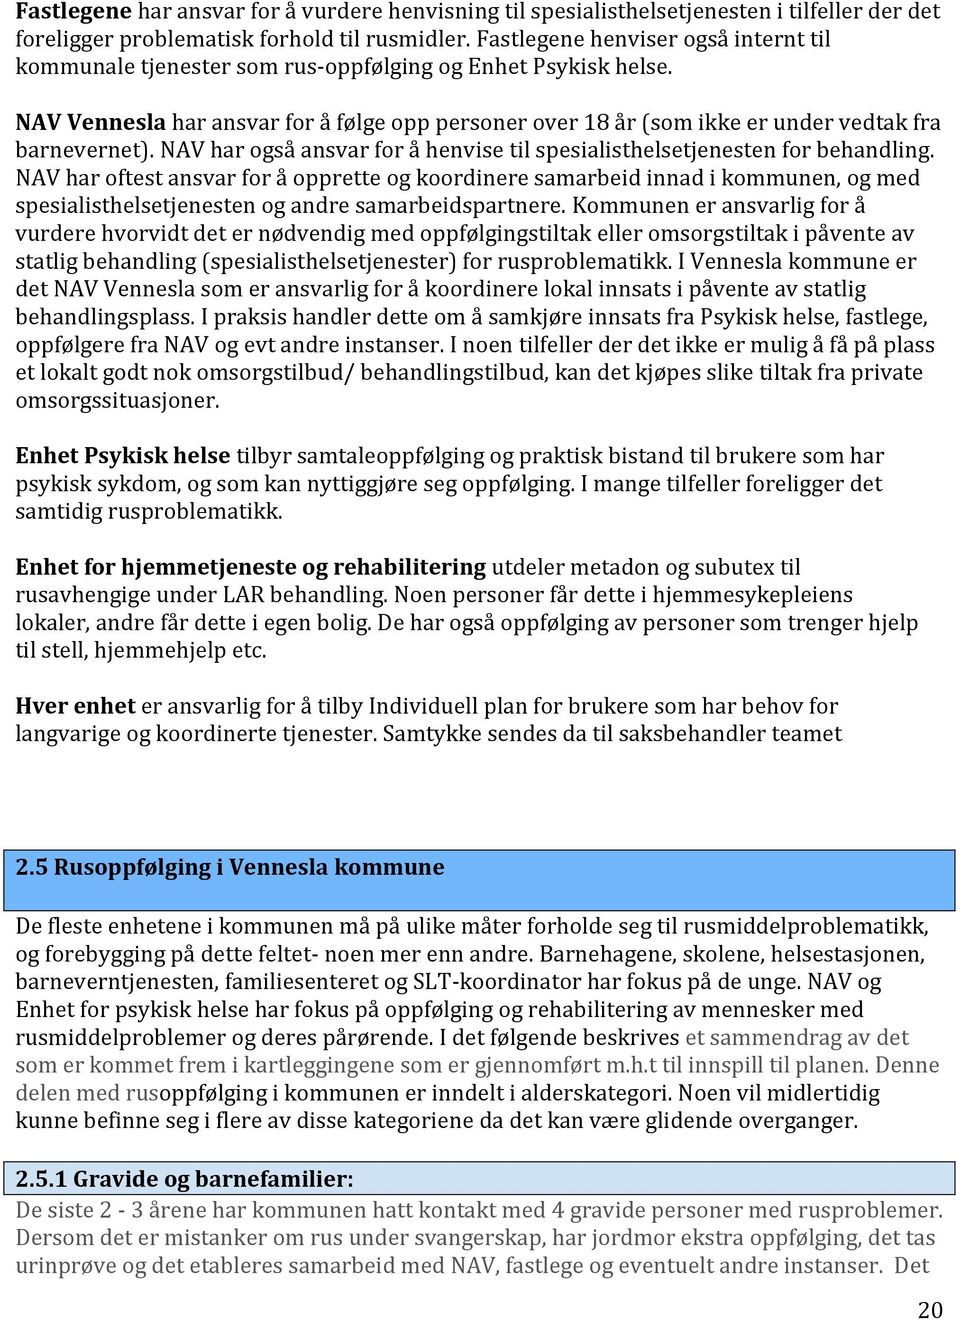 NAV Vennesla har ansvar for å følge opp personer over 18 år (som ikke er under vedtak fra barnevernet). NAV har også ansvar for å henvise til spesialisthelsetjenesten for behandling.